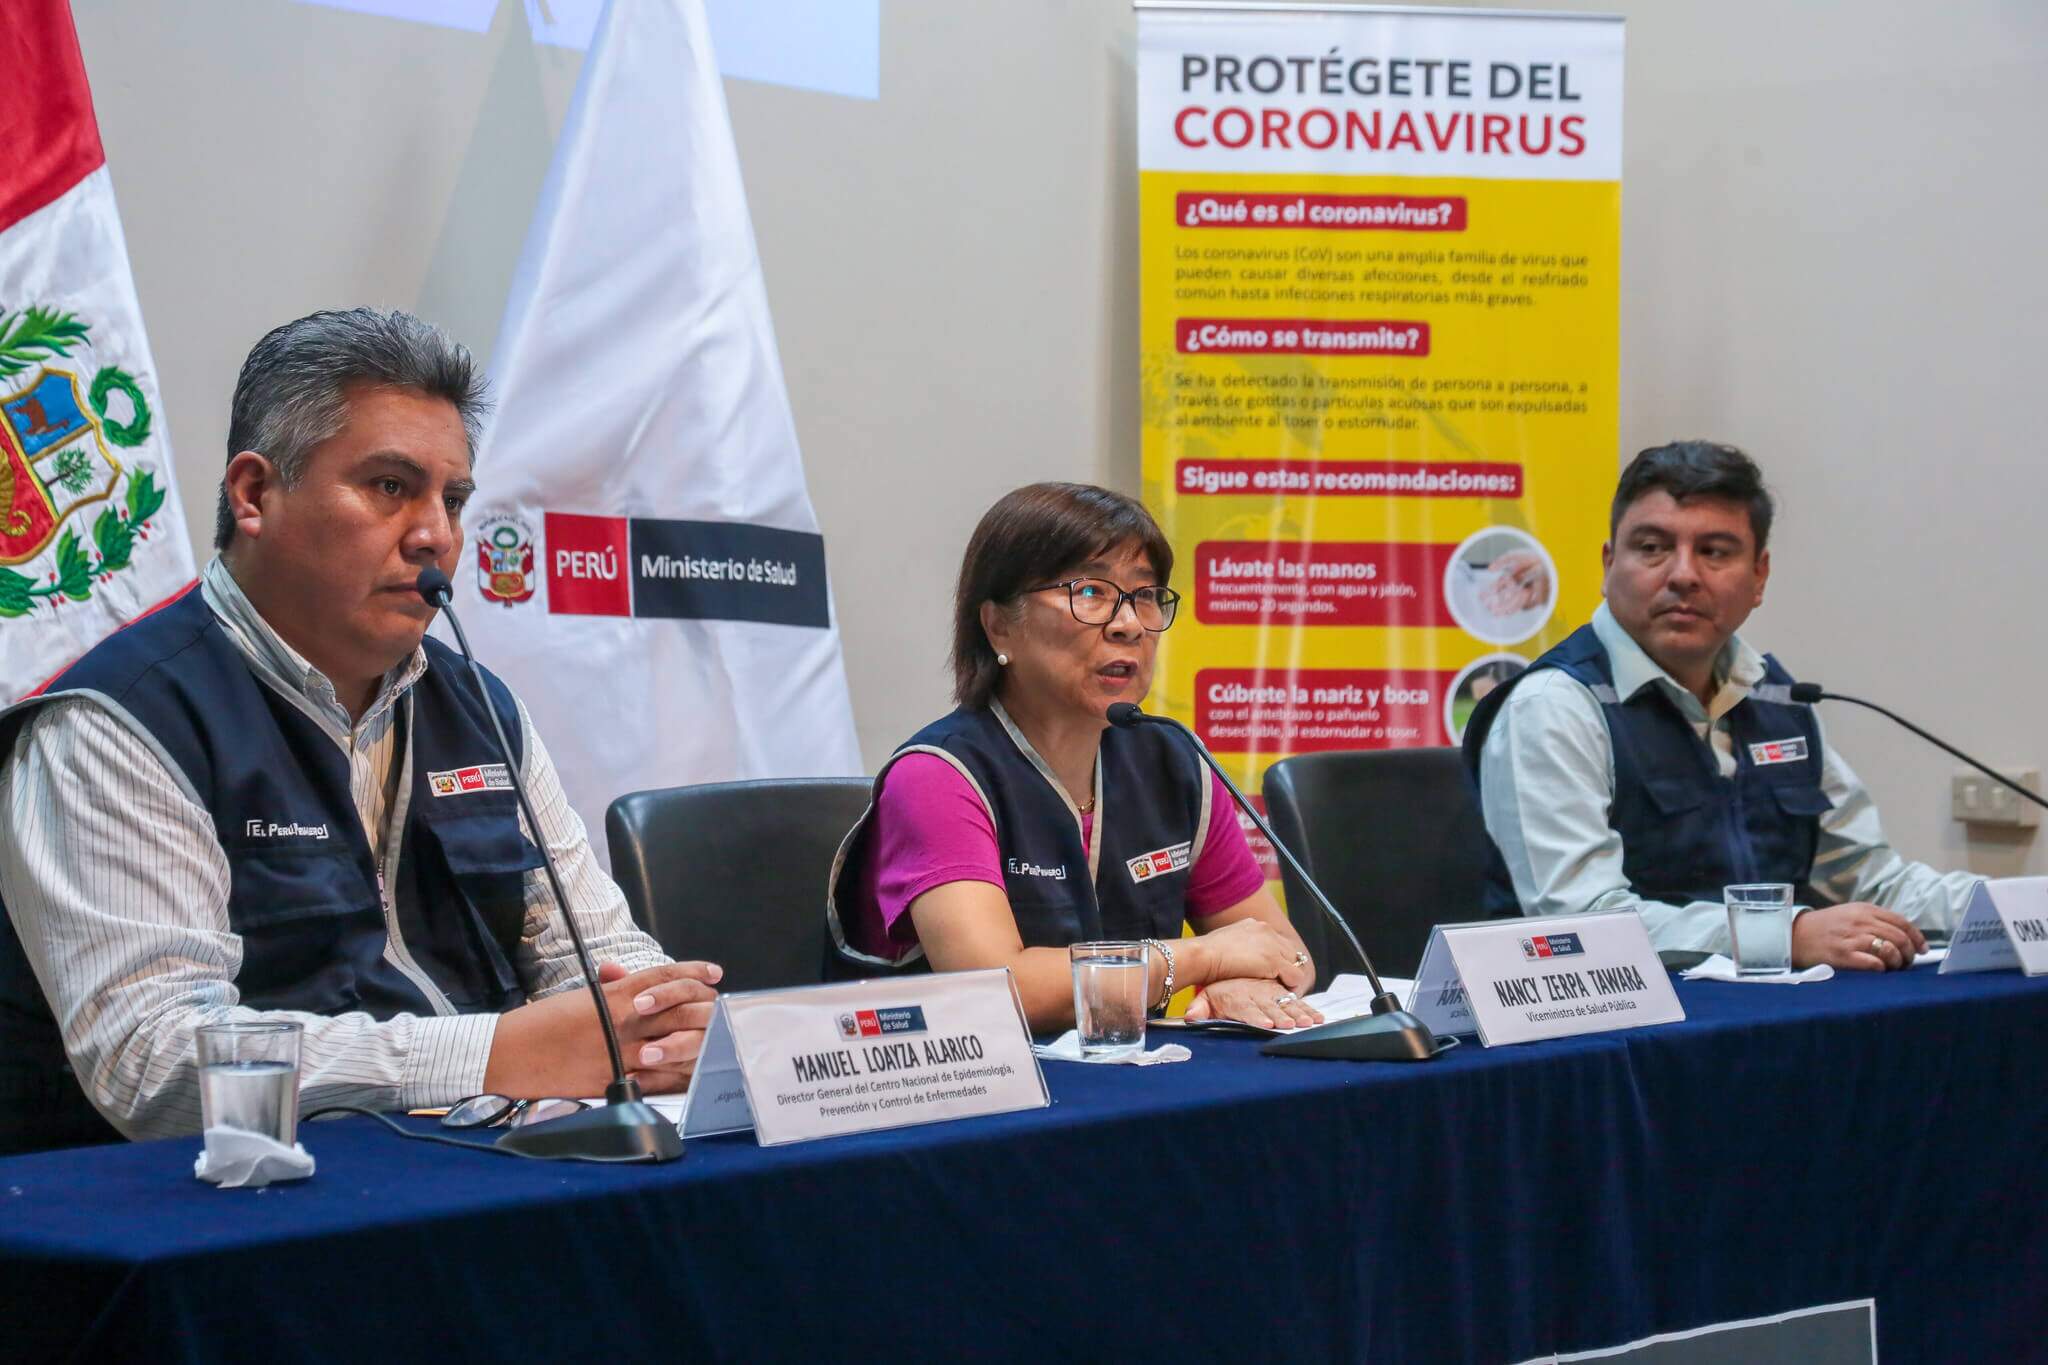 Três agentes do ministério da saúde do Peru sentados apresentando o debate sobre o Coronavírus. Ao fundo, uma placa com as informações do vírus em espanhol. Conteúdo sobre Estado de Emergência.